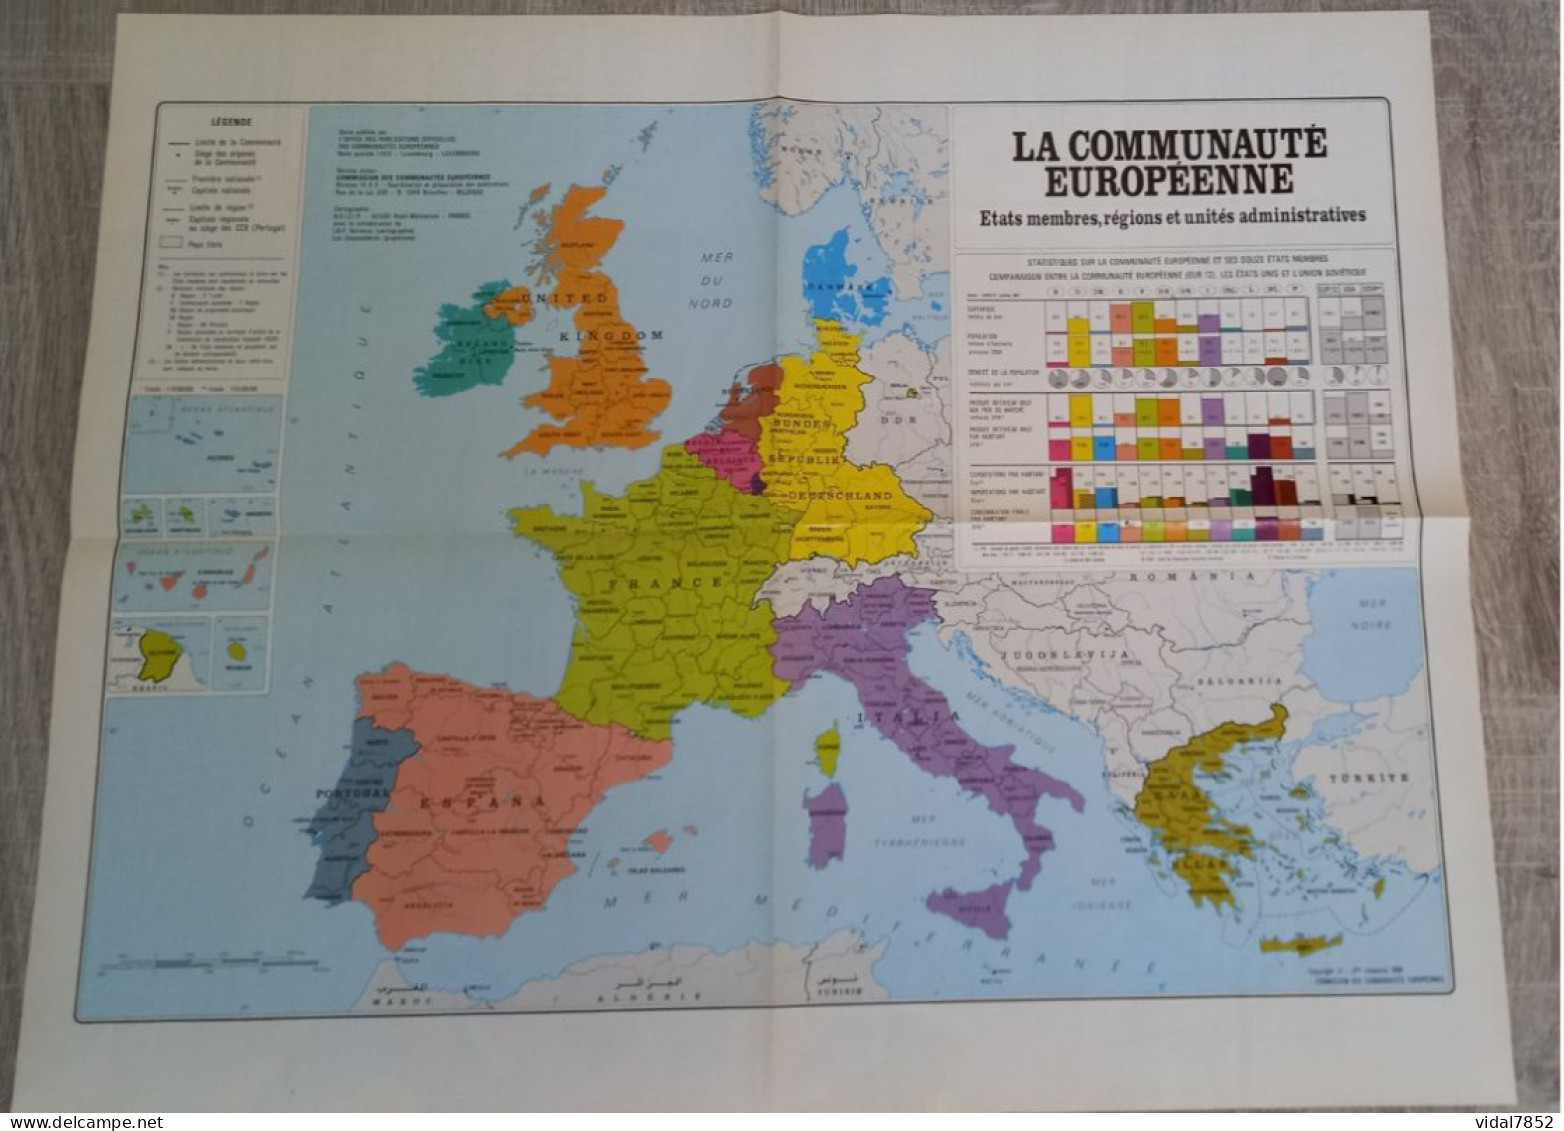 Calendrier-Almanach Des P.T.T 1990-Poster Intérieur Communauté Europèenne-Parc Axtérix Département AIN-01-Référence 421 - Tamaño Grande : 1981-90